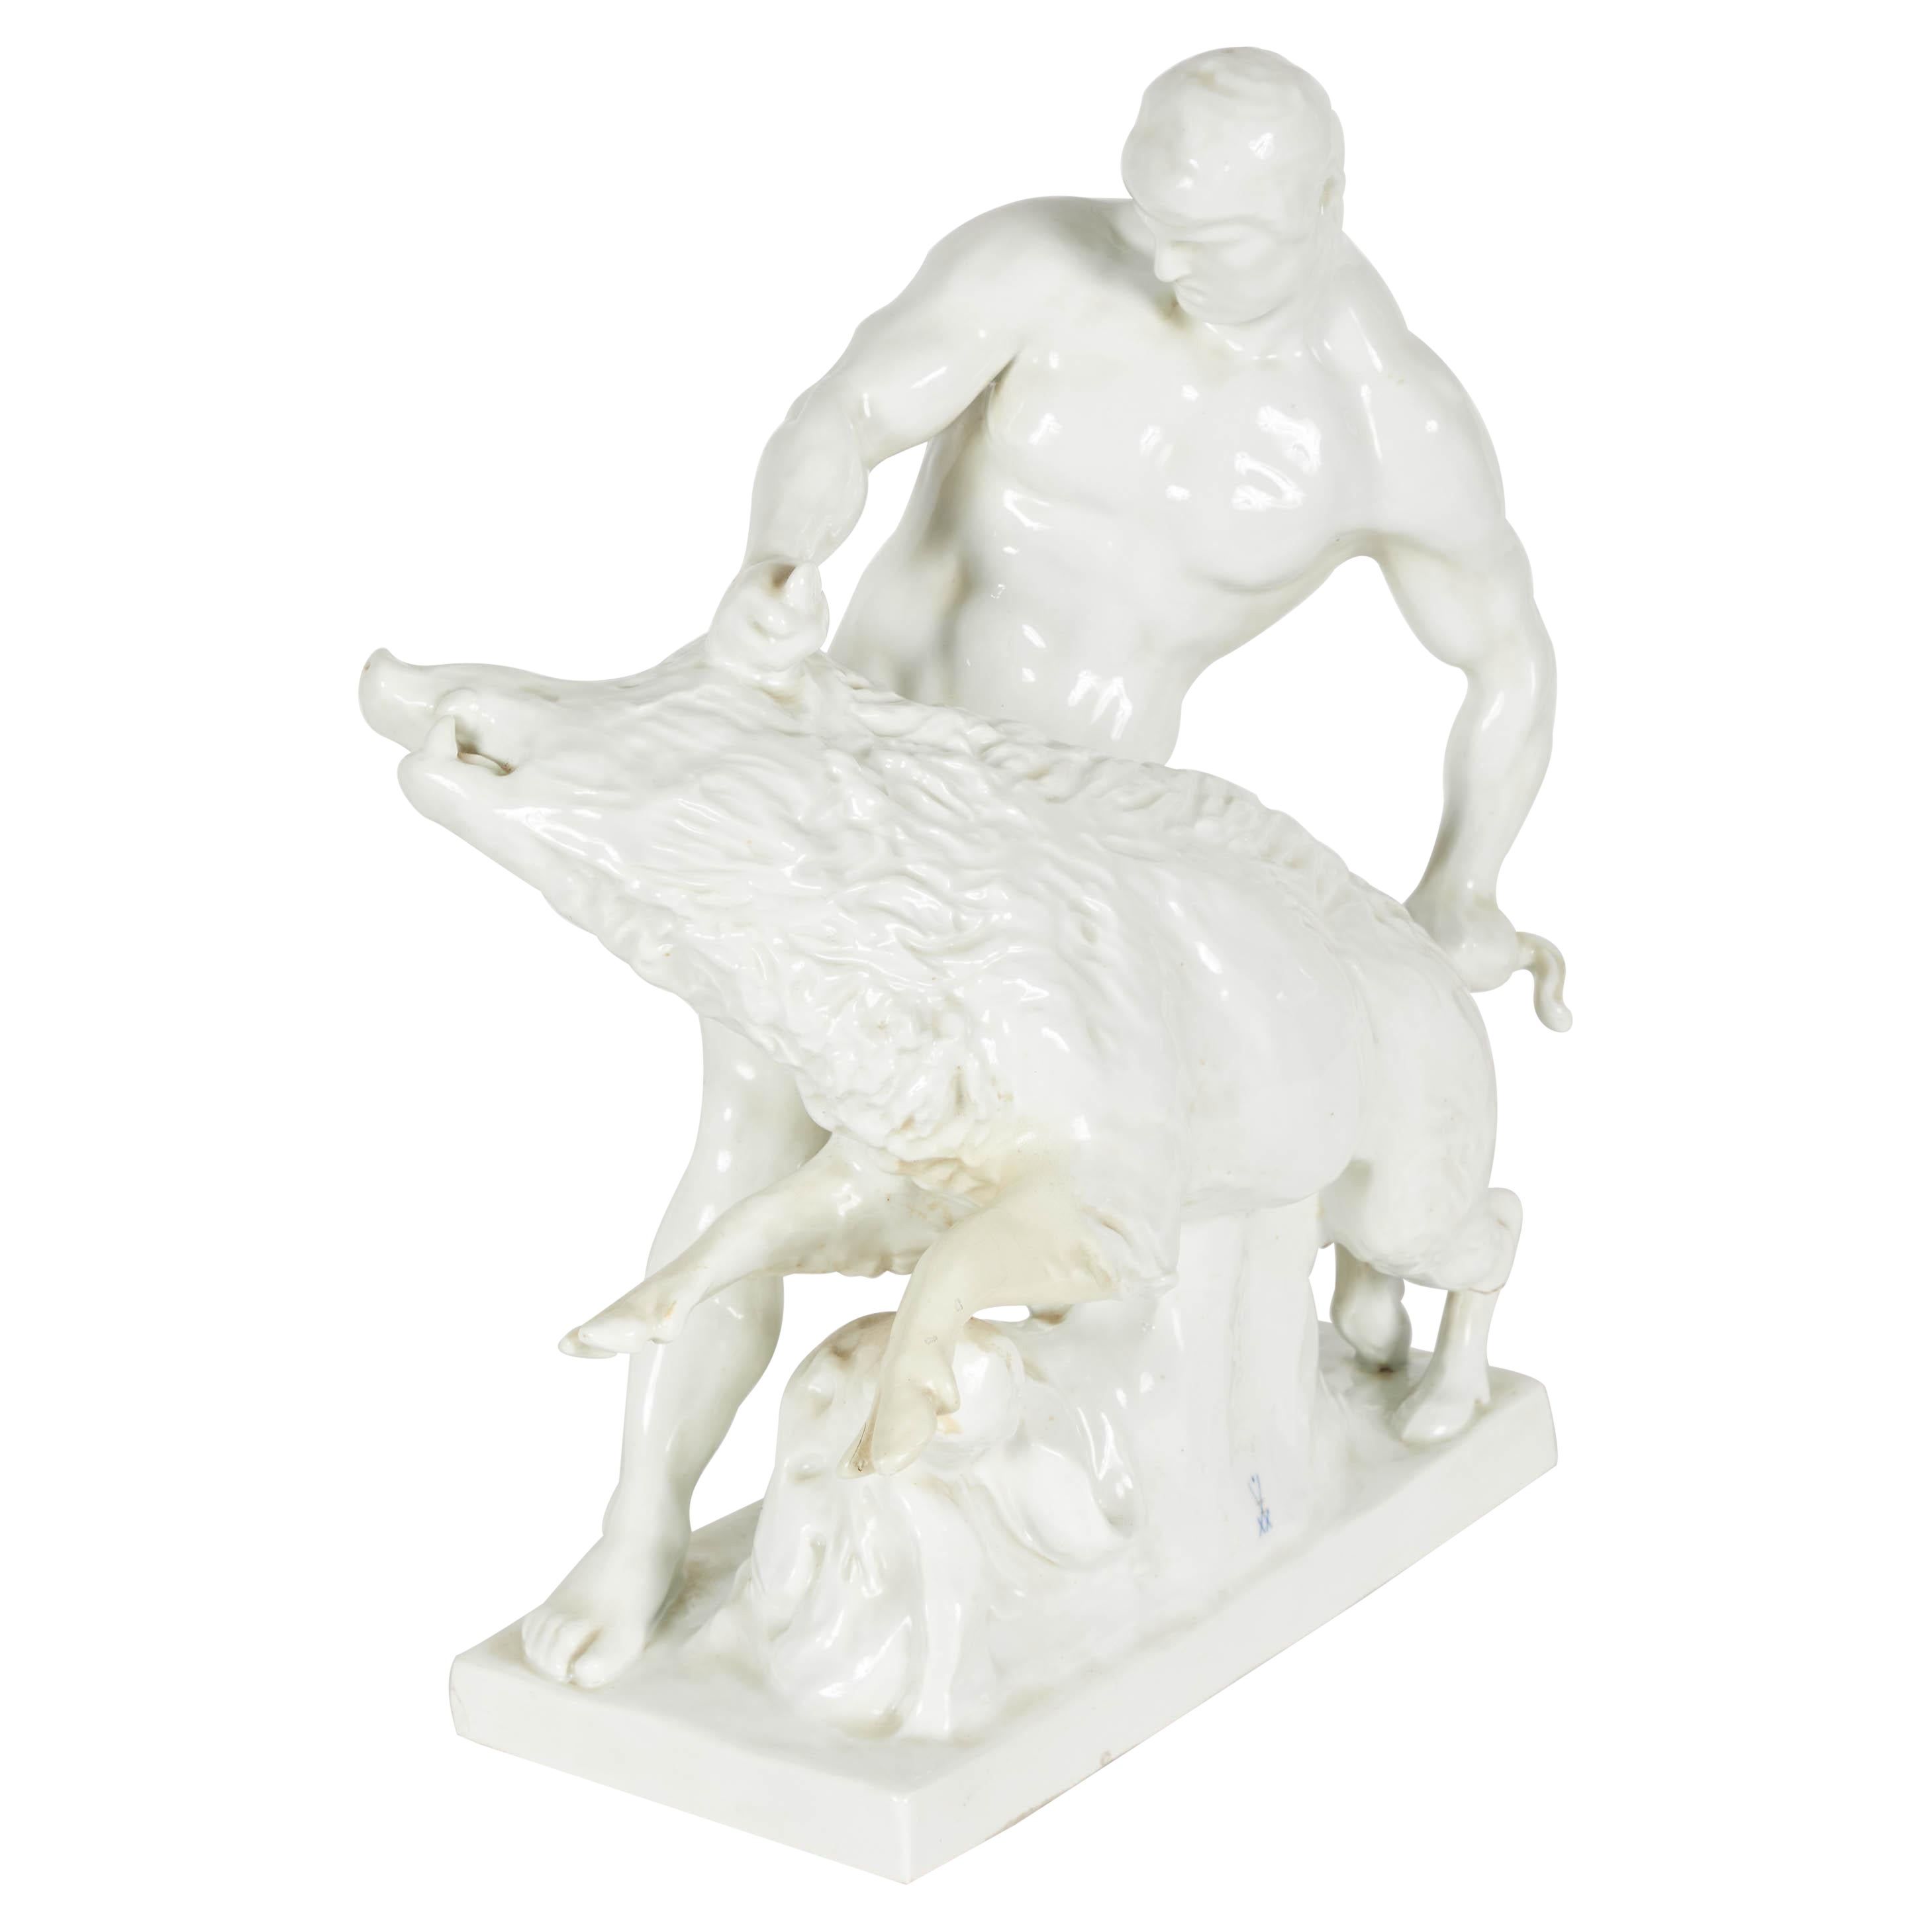 Sculpture en porcelaine blanche représentant un homme luttant contre un sanglier